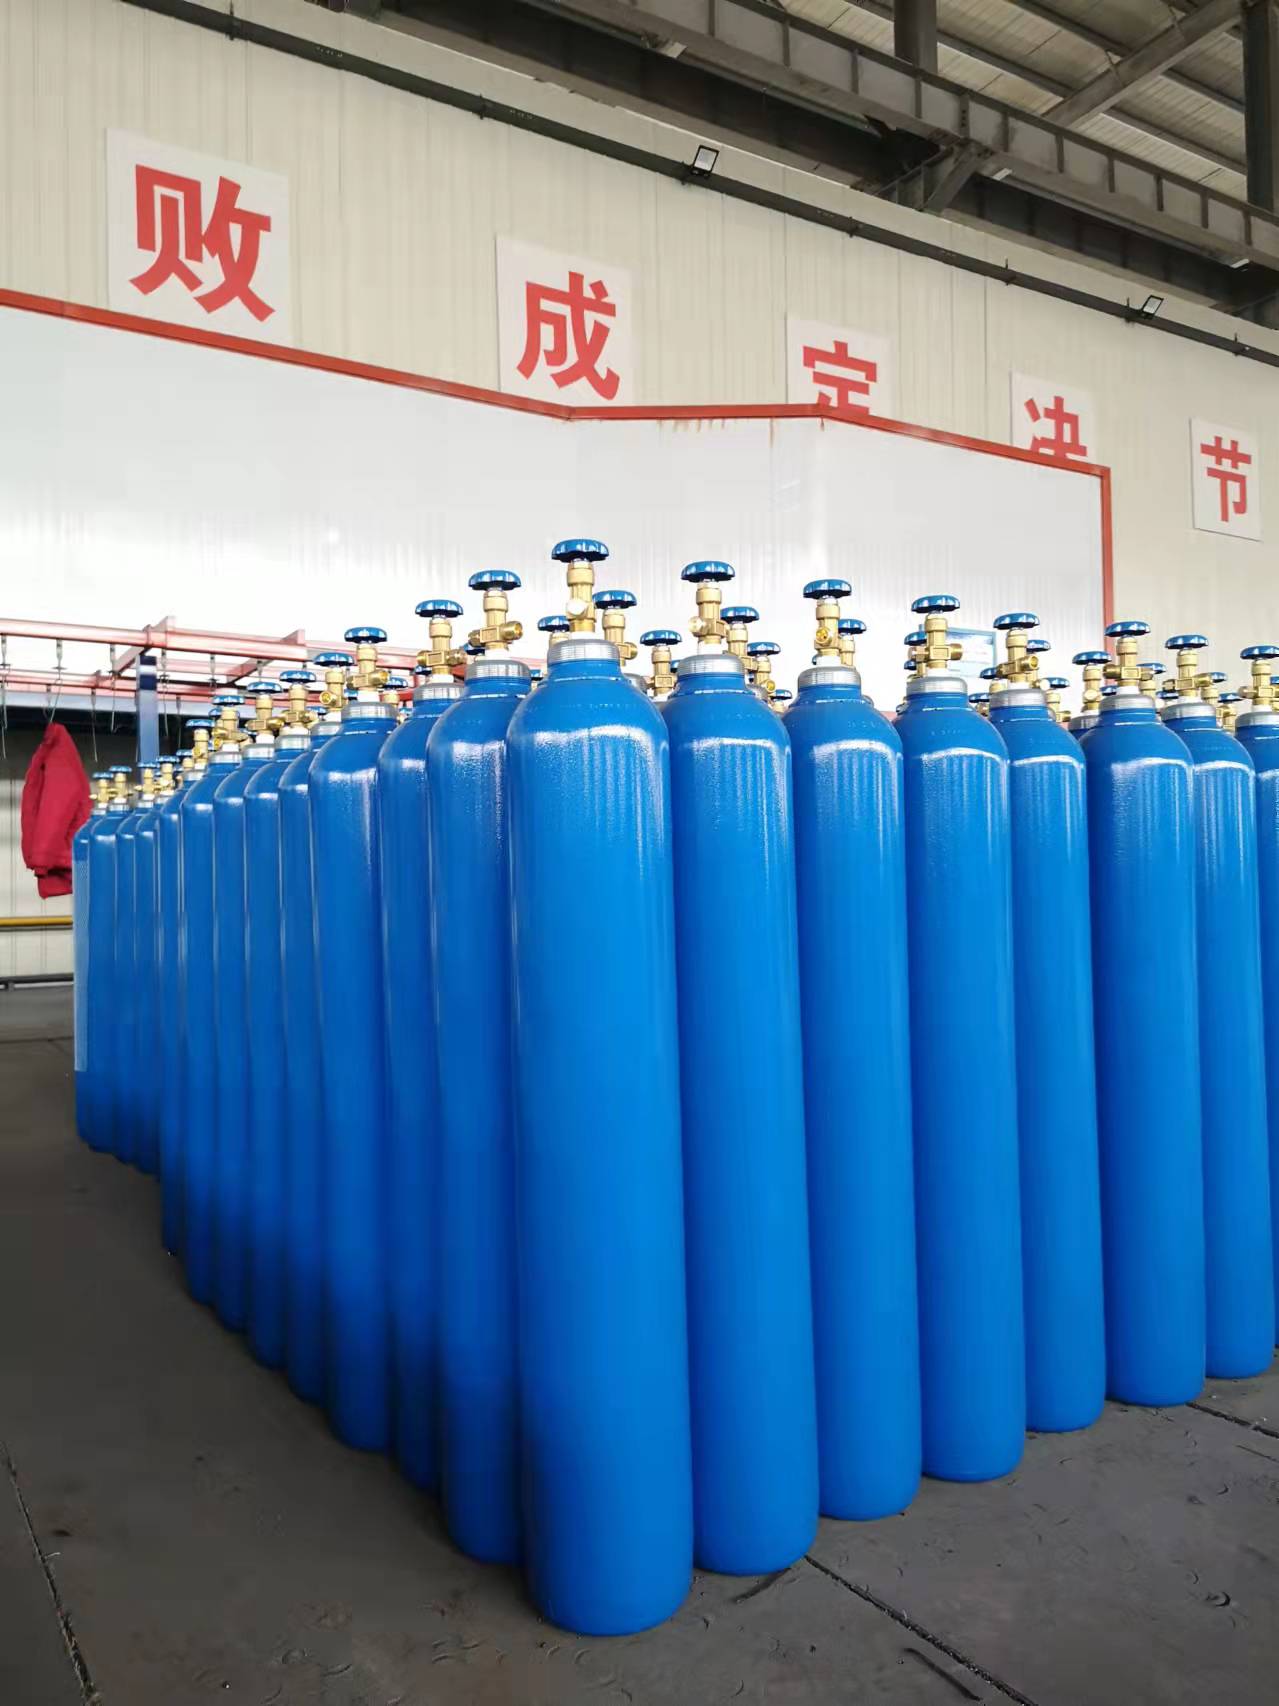 咸阳氧气瓶公司 二氧化碳无缝气瓶 山东广承压力容器有限公司